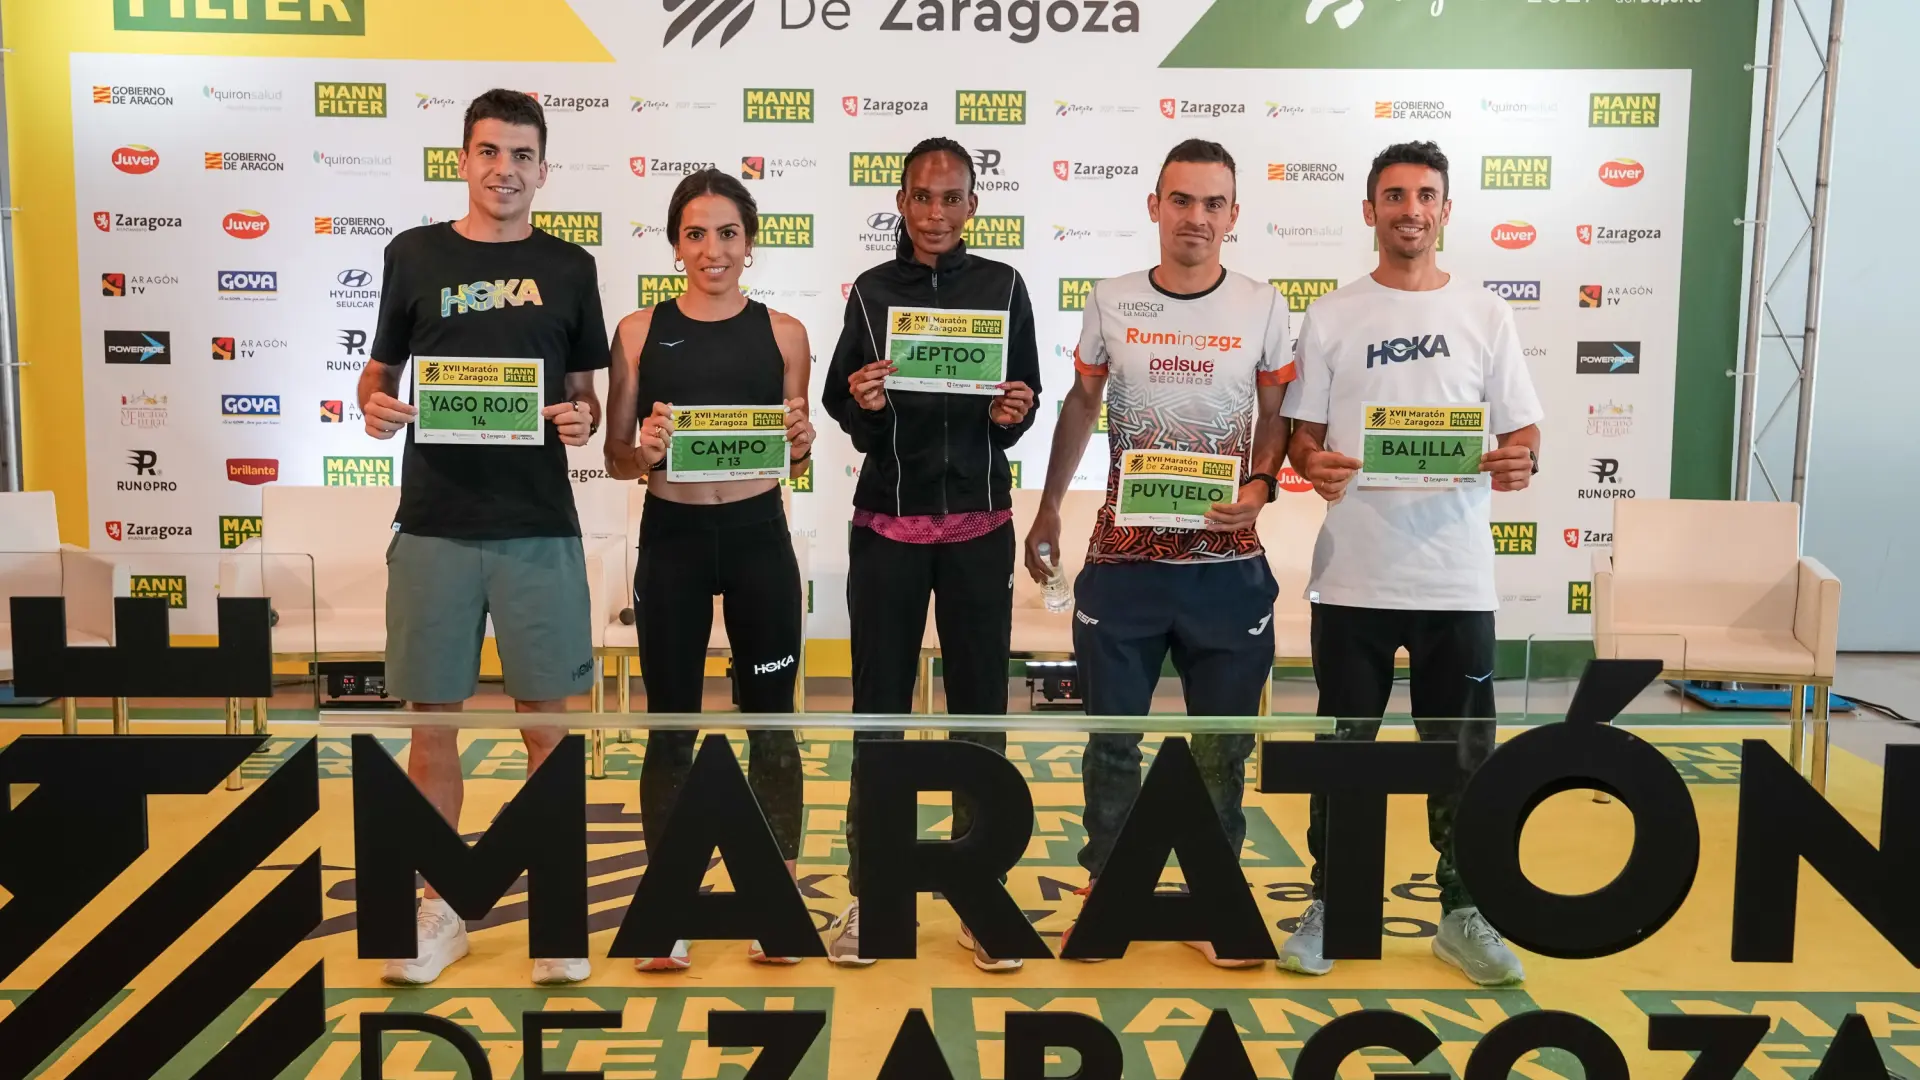 Las estrellas del Mann-Filter Maratón de Zaragoza, preparadas para la fiesta del running: “Aquí se vive el atletismo con mucho cariño”